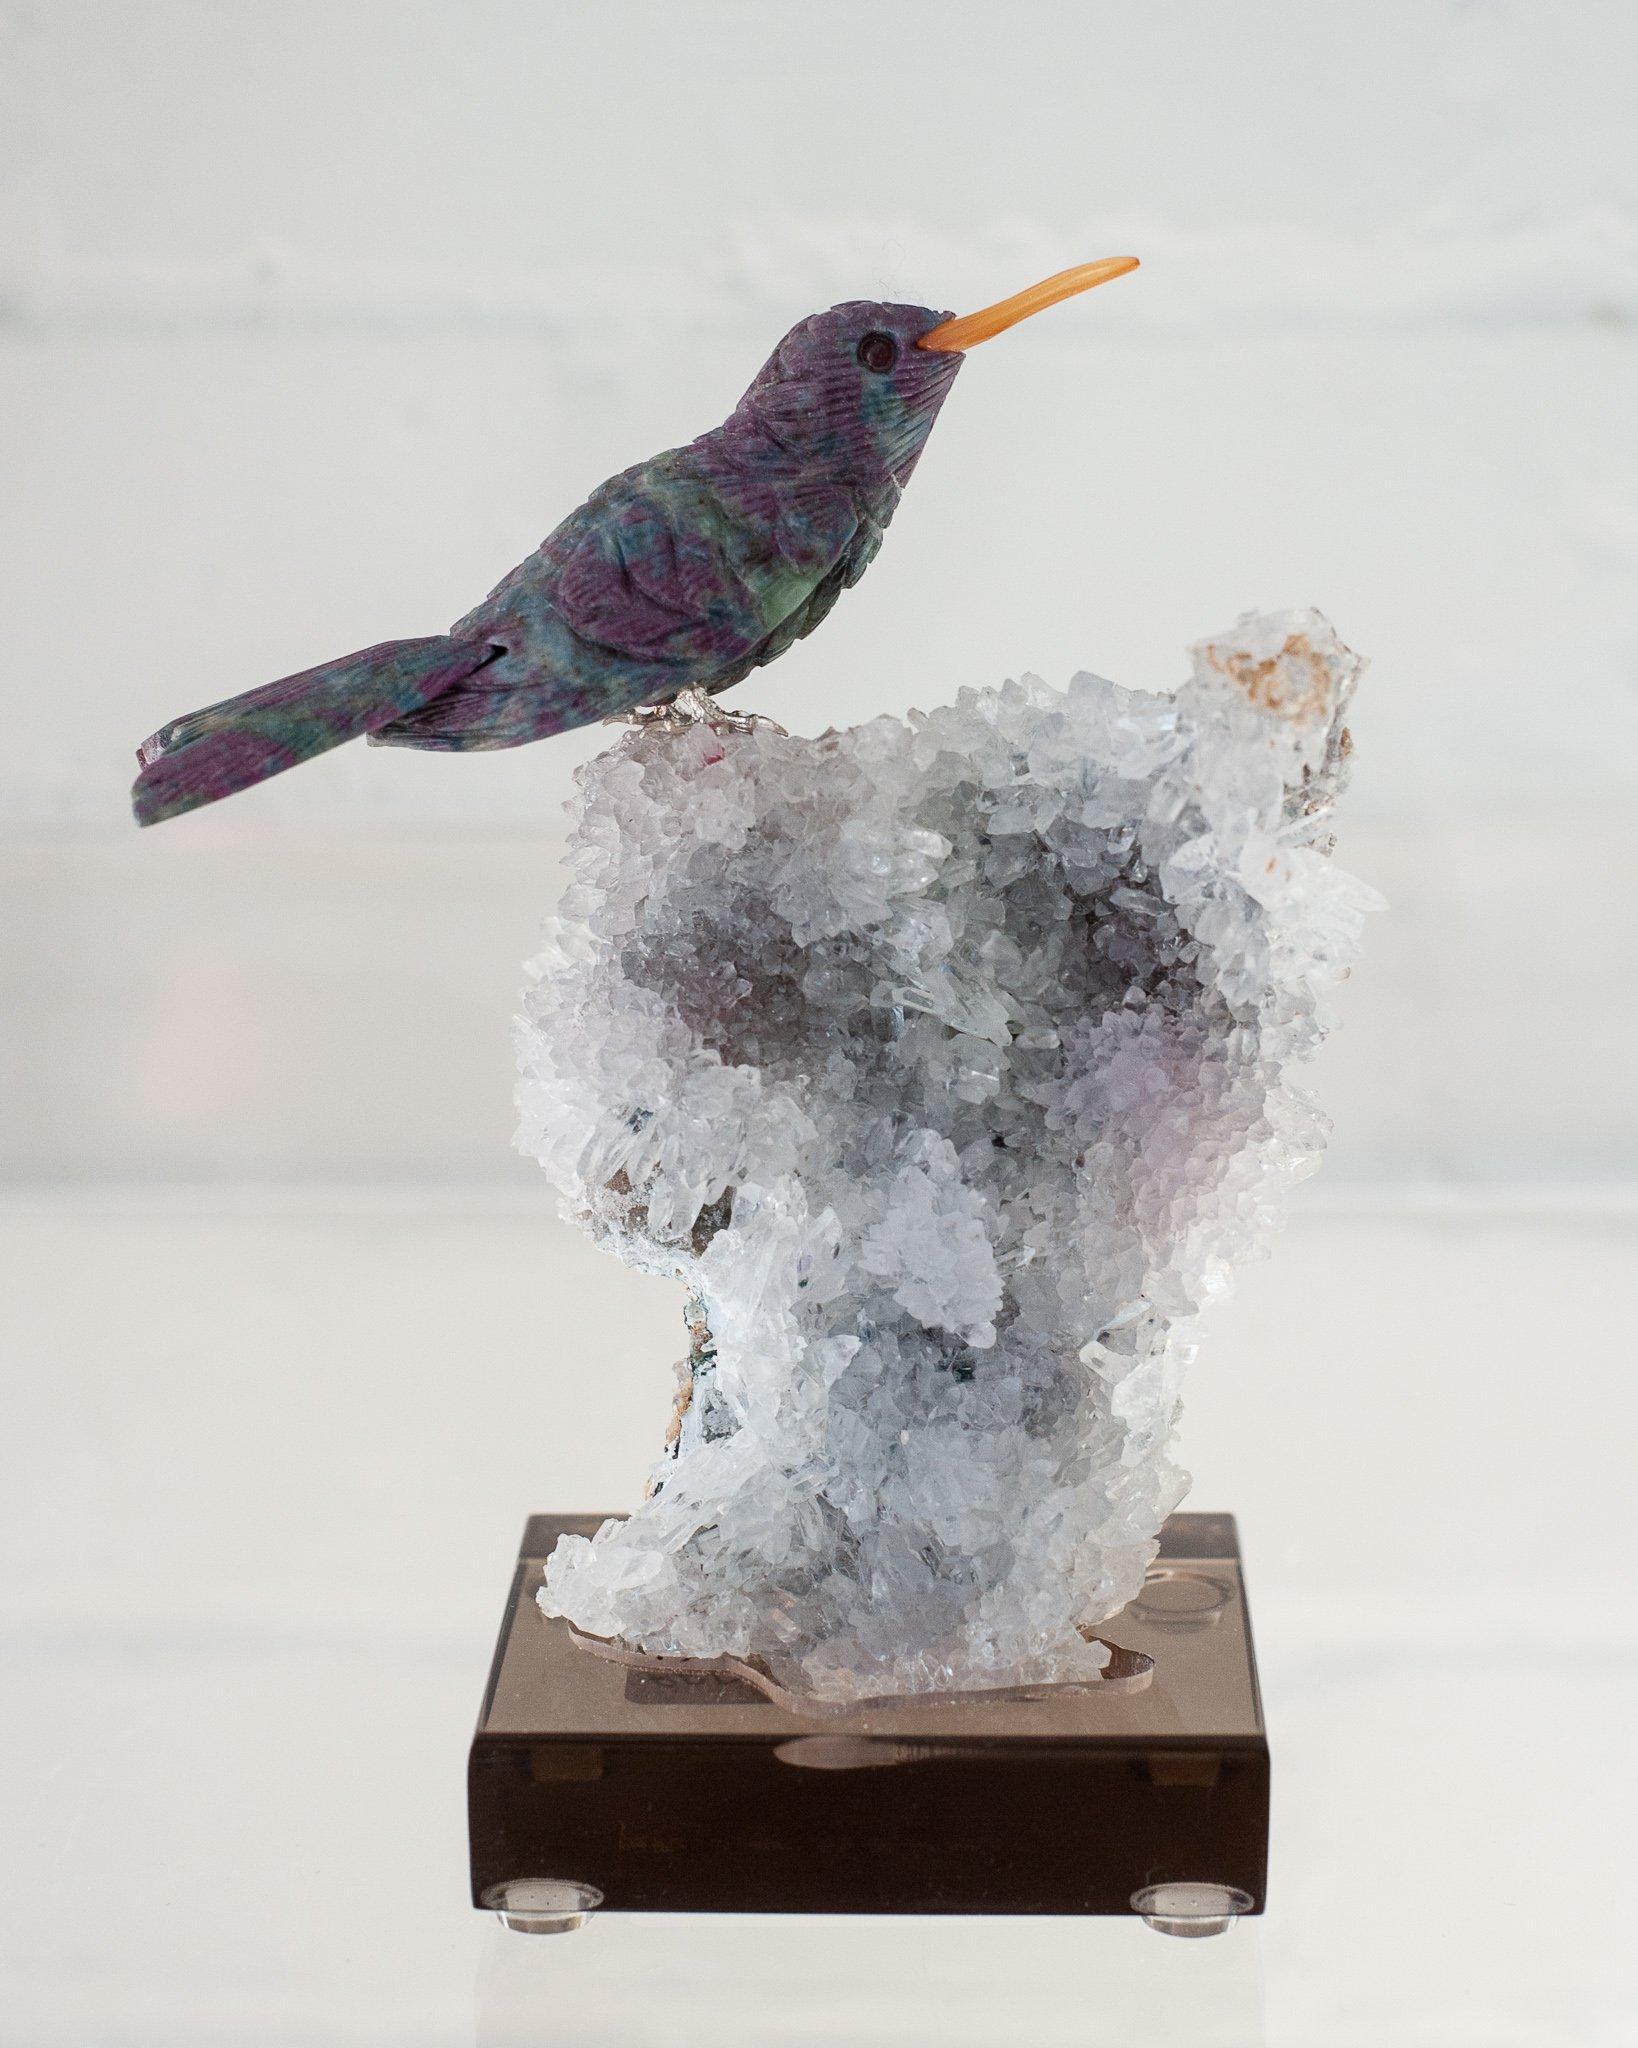 Un magnifique colibri en pierre semi-précieuse de rubis sculpté à la main, monté sur une base de spécimen minéral en améthyste et quartz. Cet oiseau exotique est une combinaison décorative d'ornithologie et de géologie.